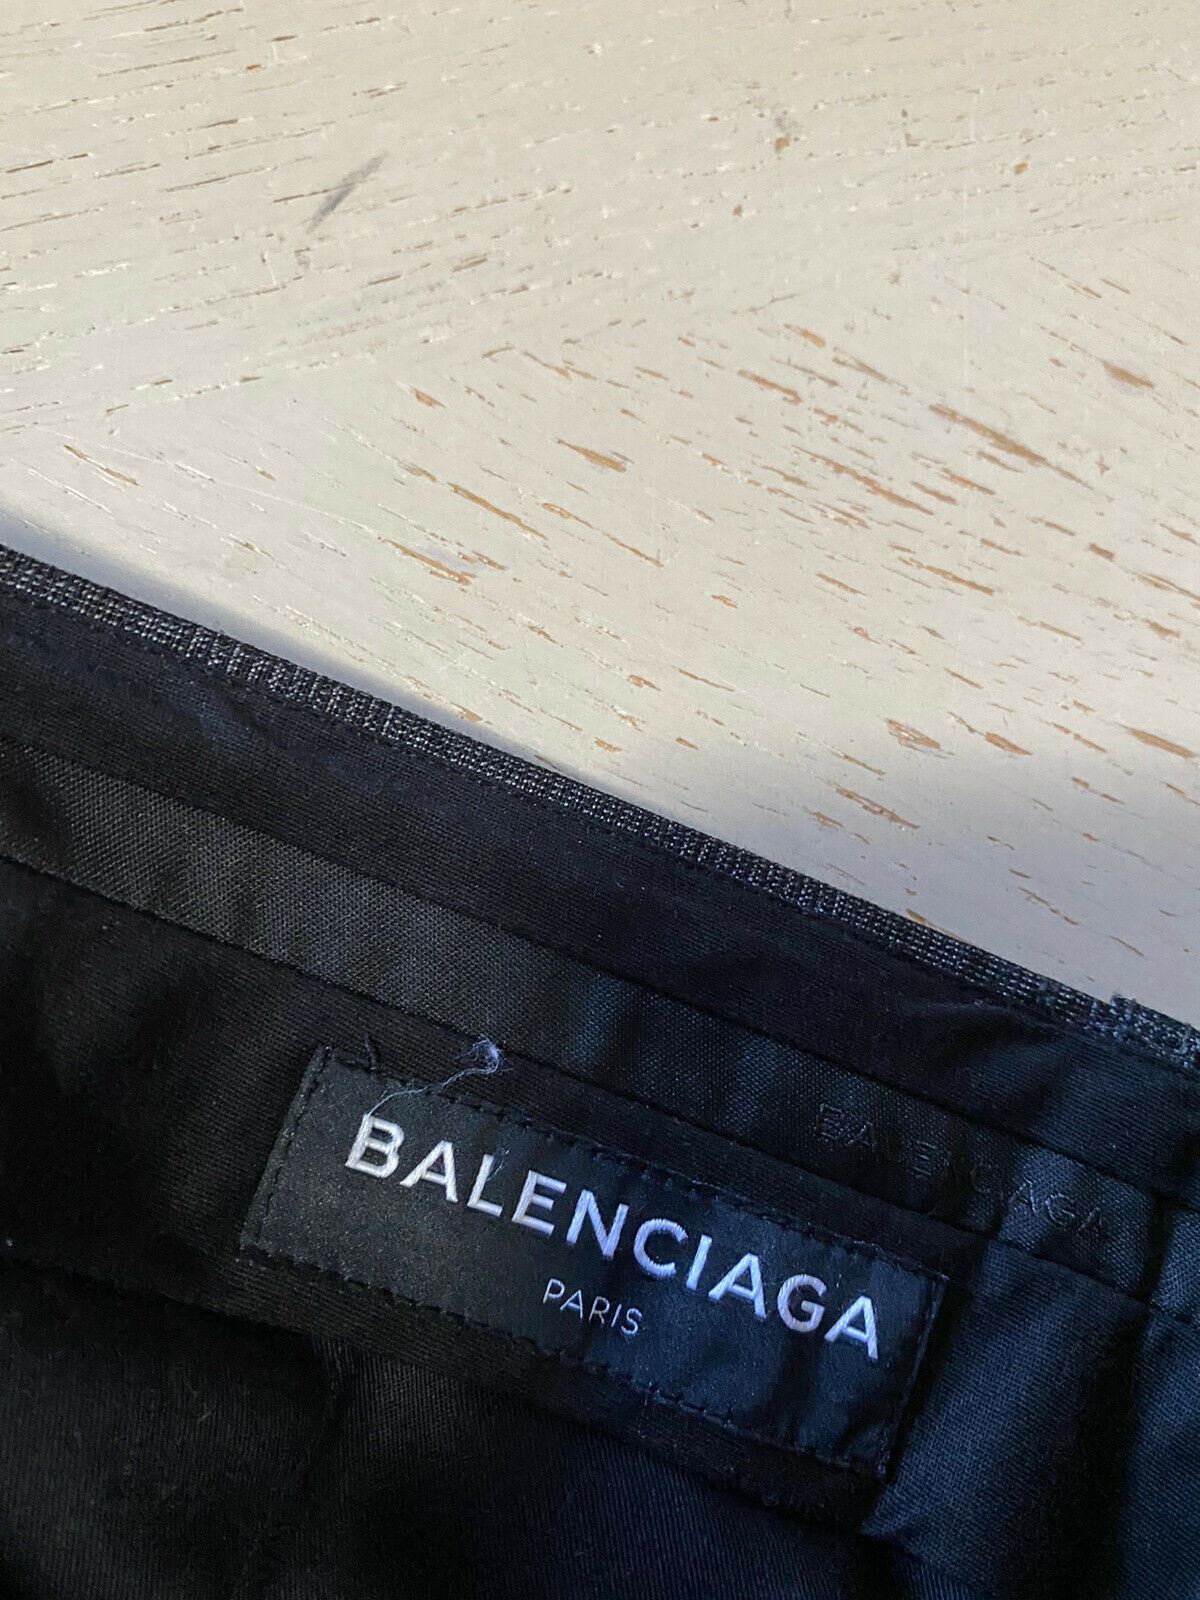 NWT $795 Balenciaga Men Wool/Mohair Pants Gray 34 US ( 50 Eu ) Italy